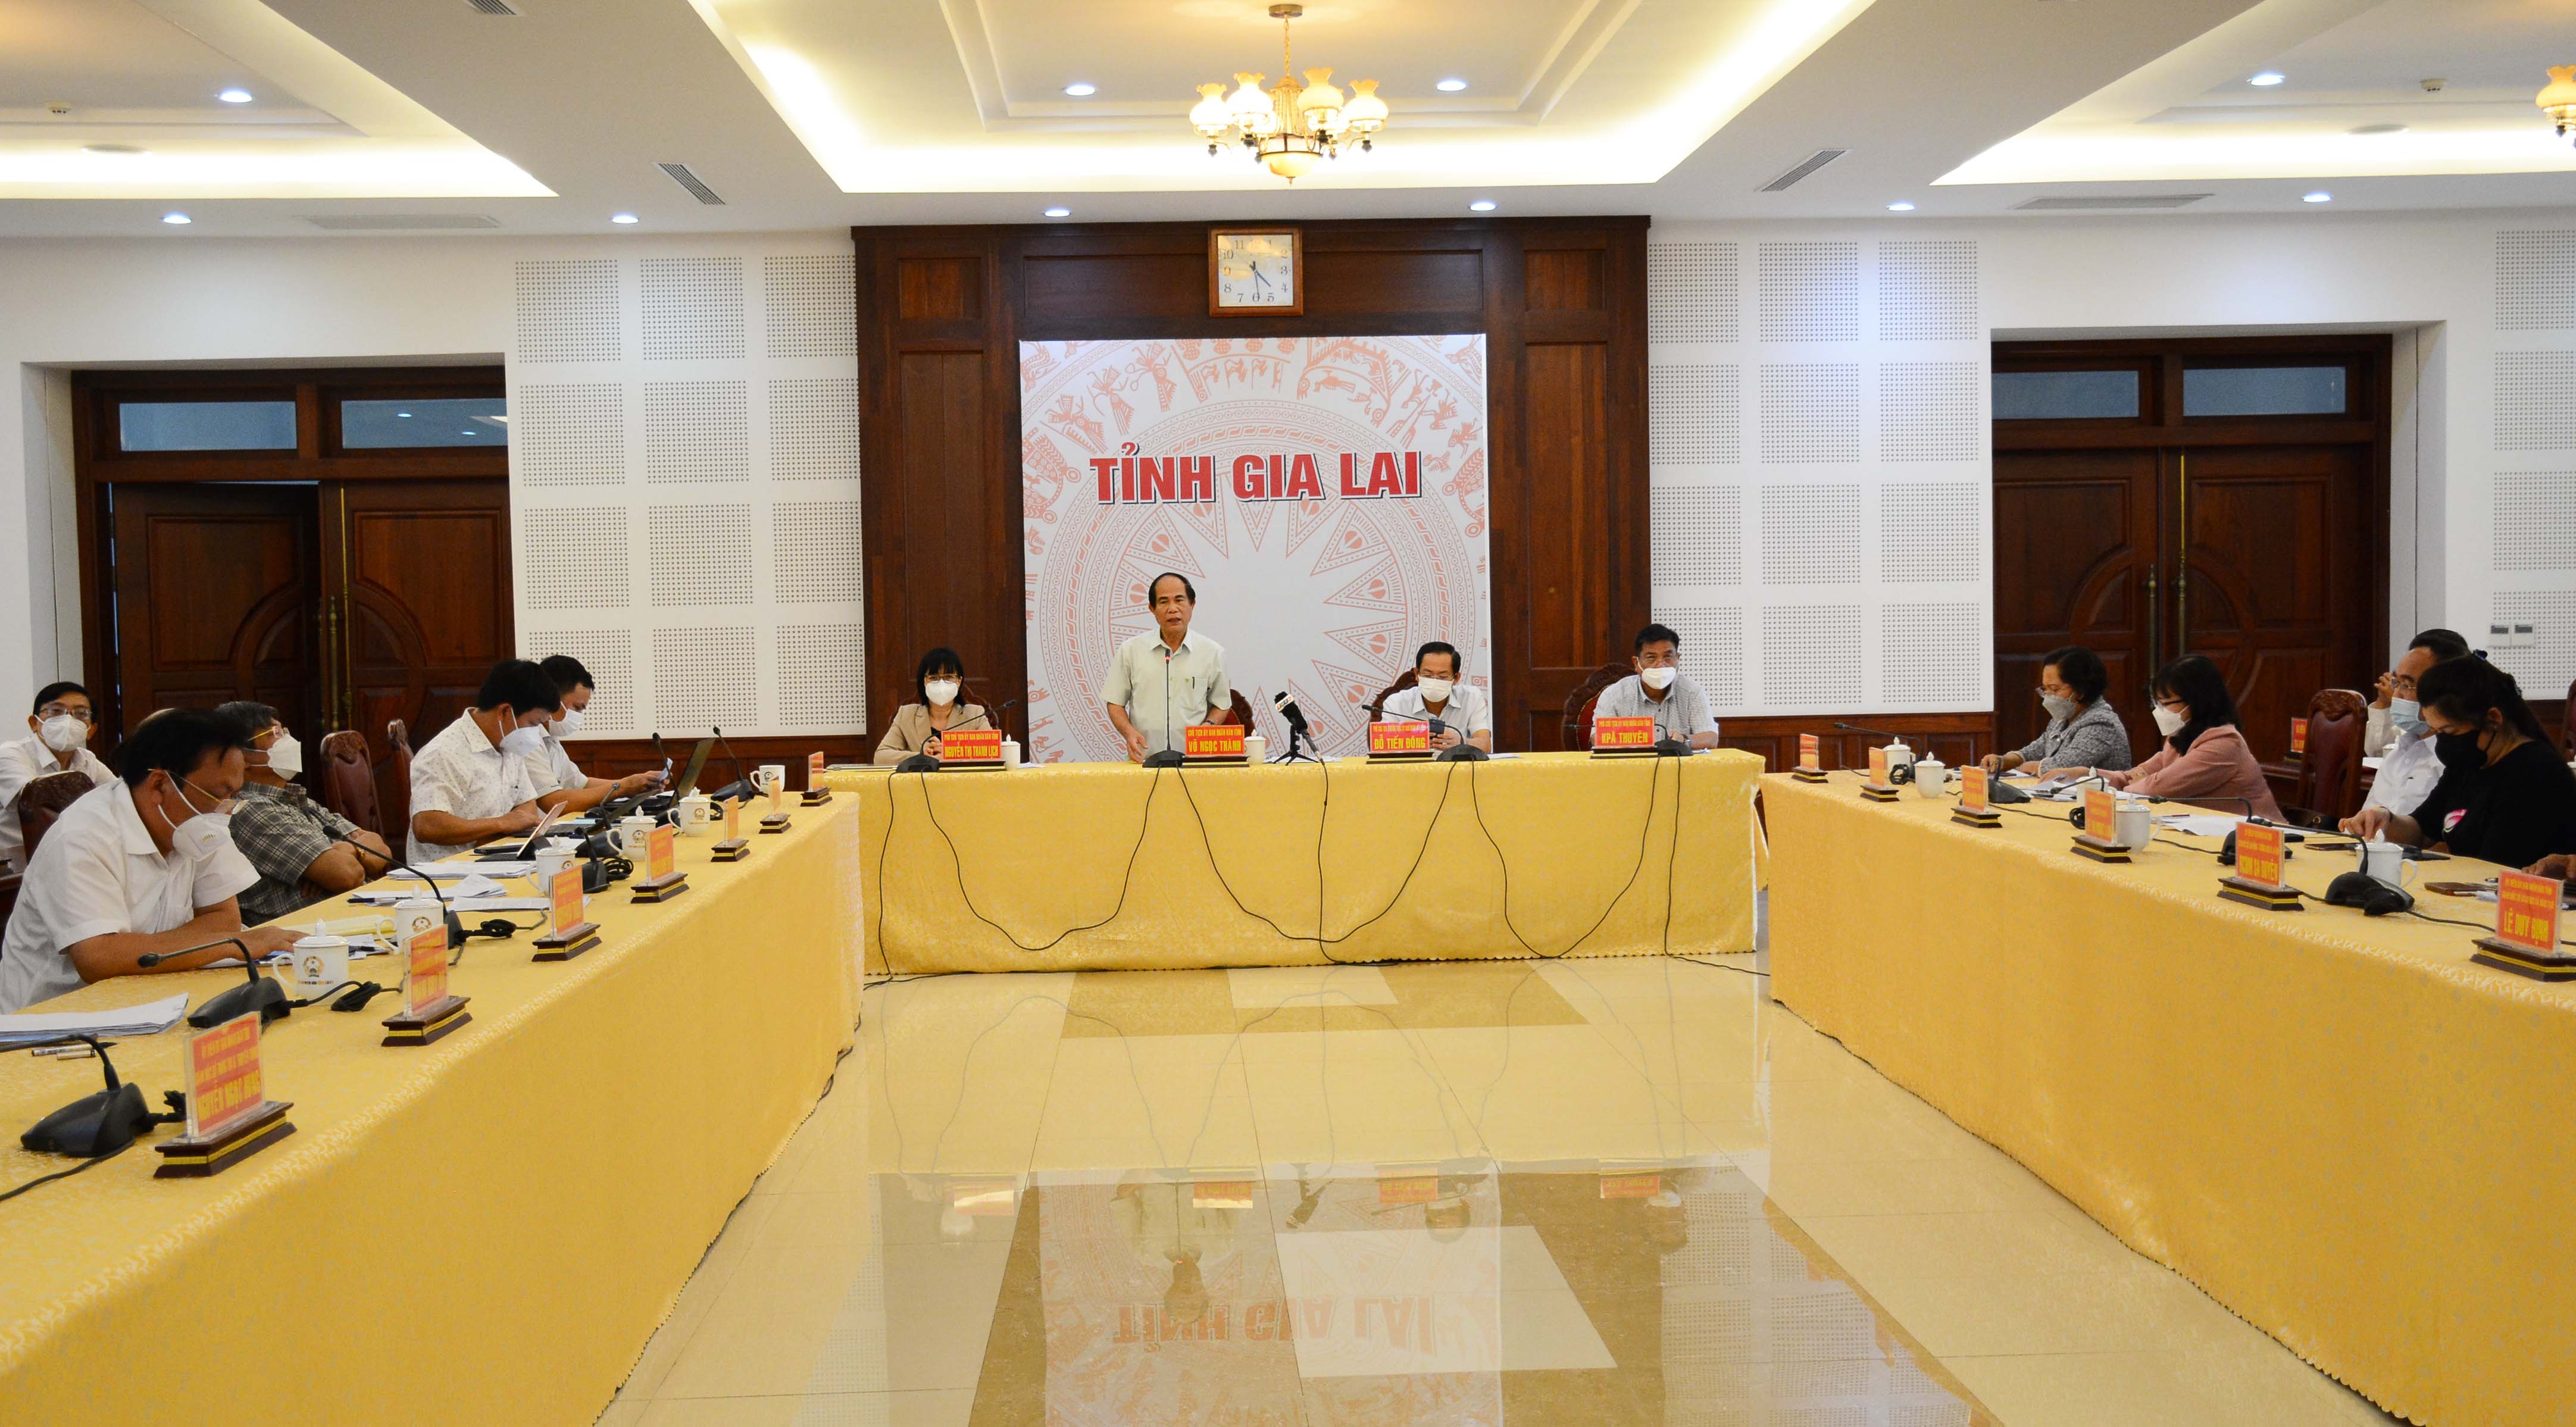 Chủ tịch UBND tỉnh Gia Lai Võ Ngọc Thành: Tăng tốc triển khai các nhiệm vụ trọng tâm